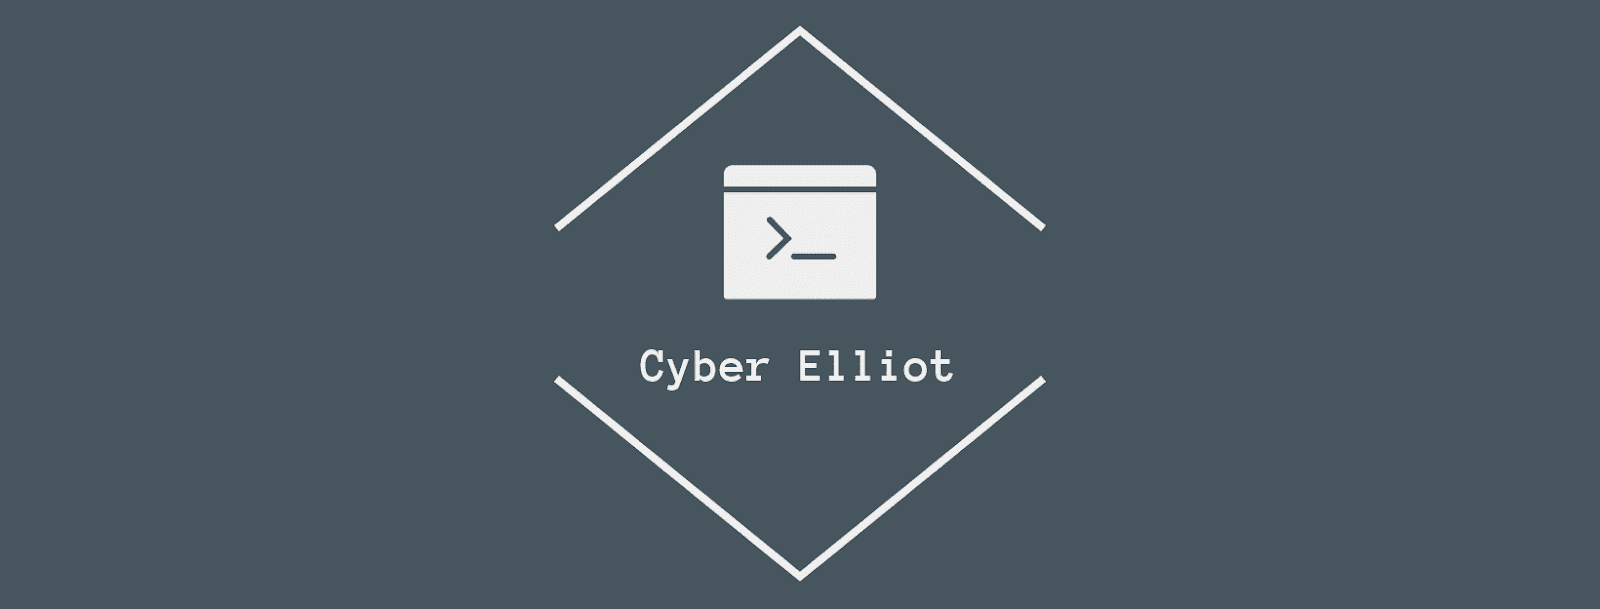 Cyber Elliot